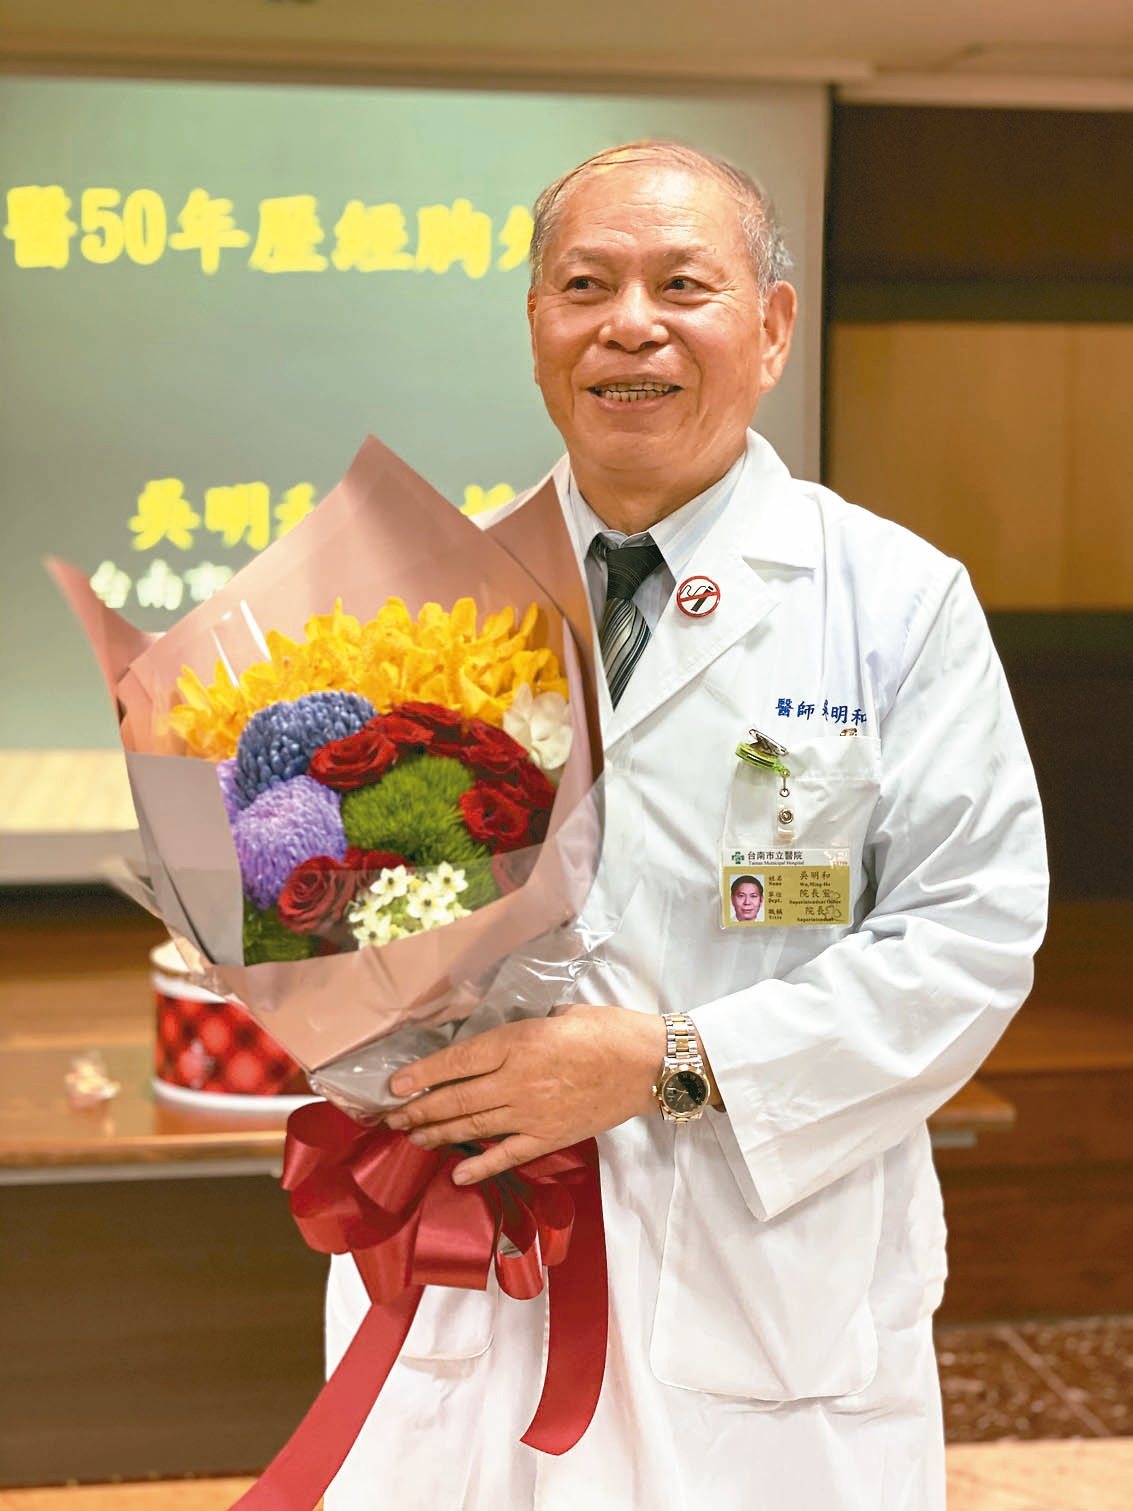 台南市立醫院院長吳明和最近剛慶祝行醫50周年。